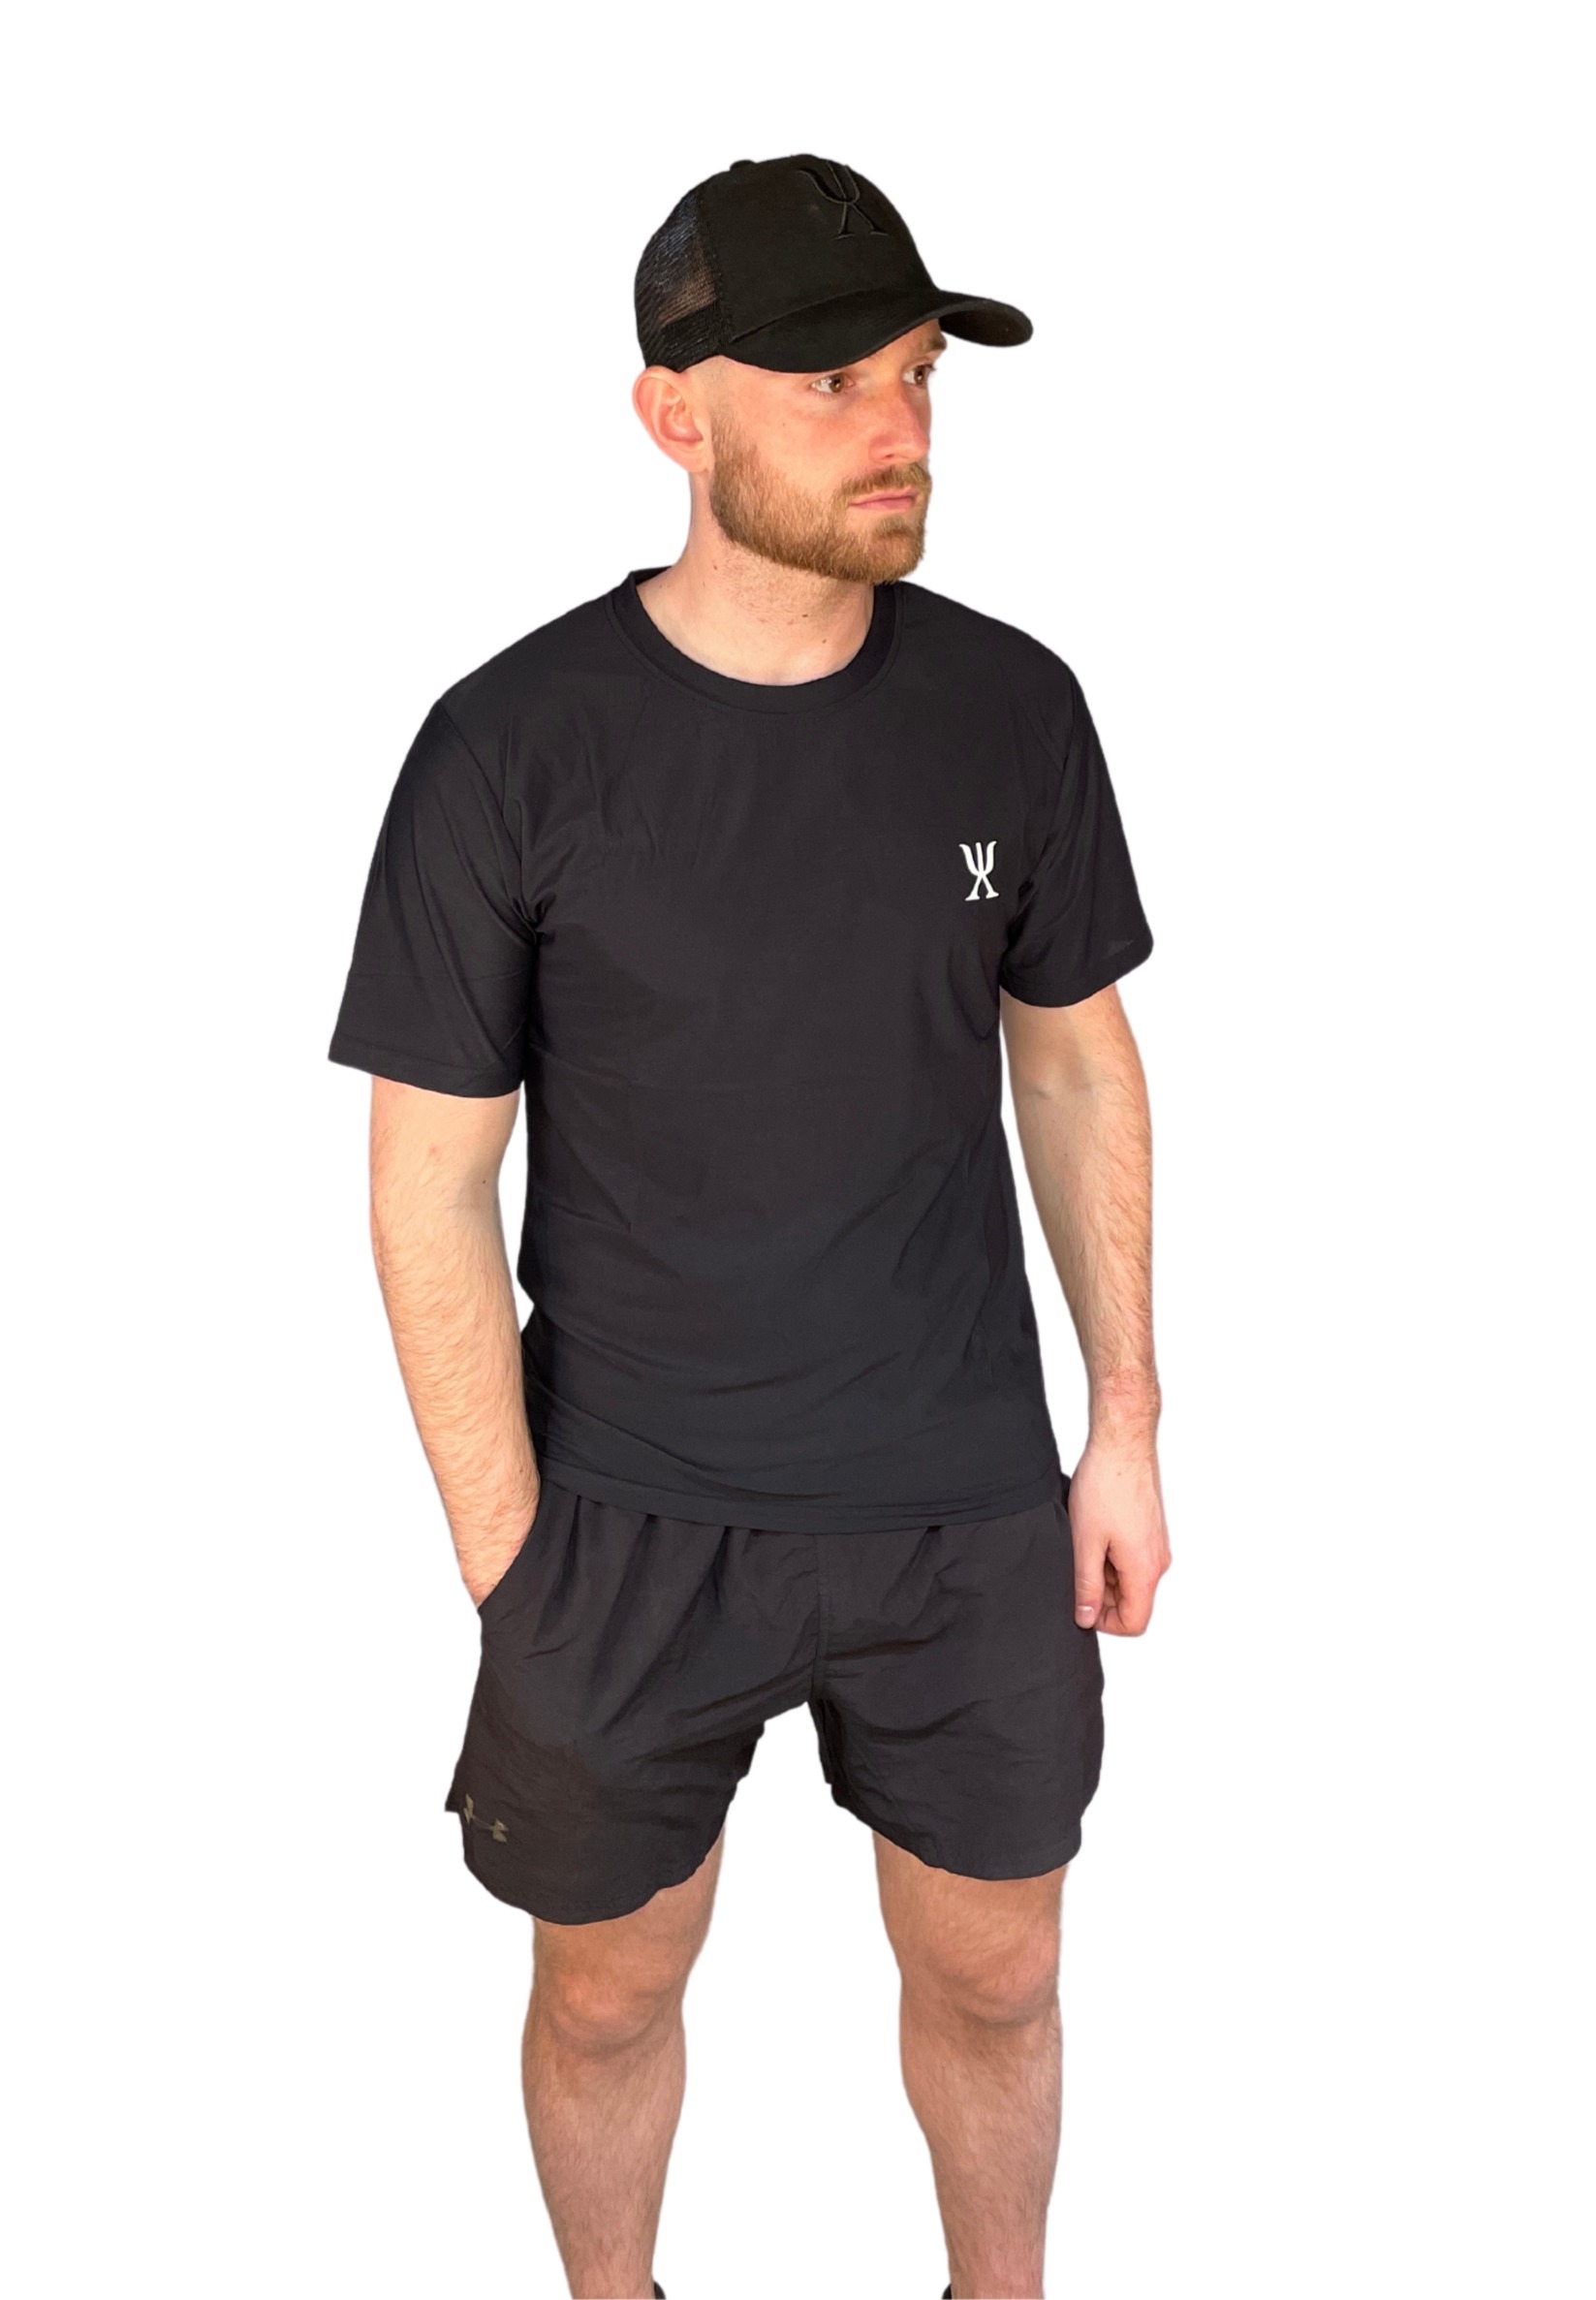 Exersci Training Short Sleeve Black